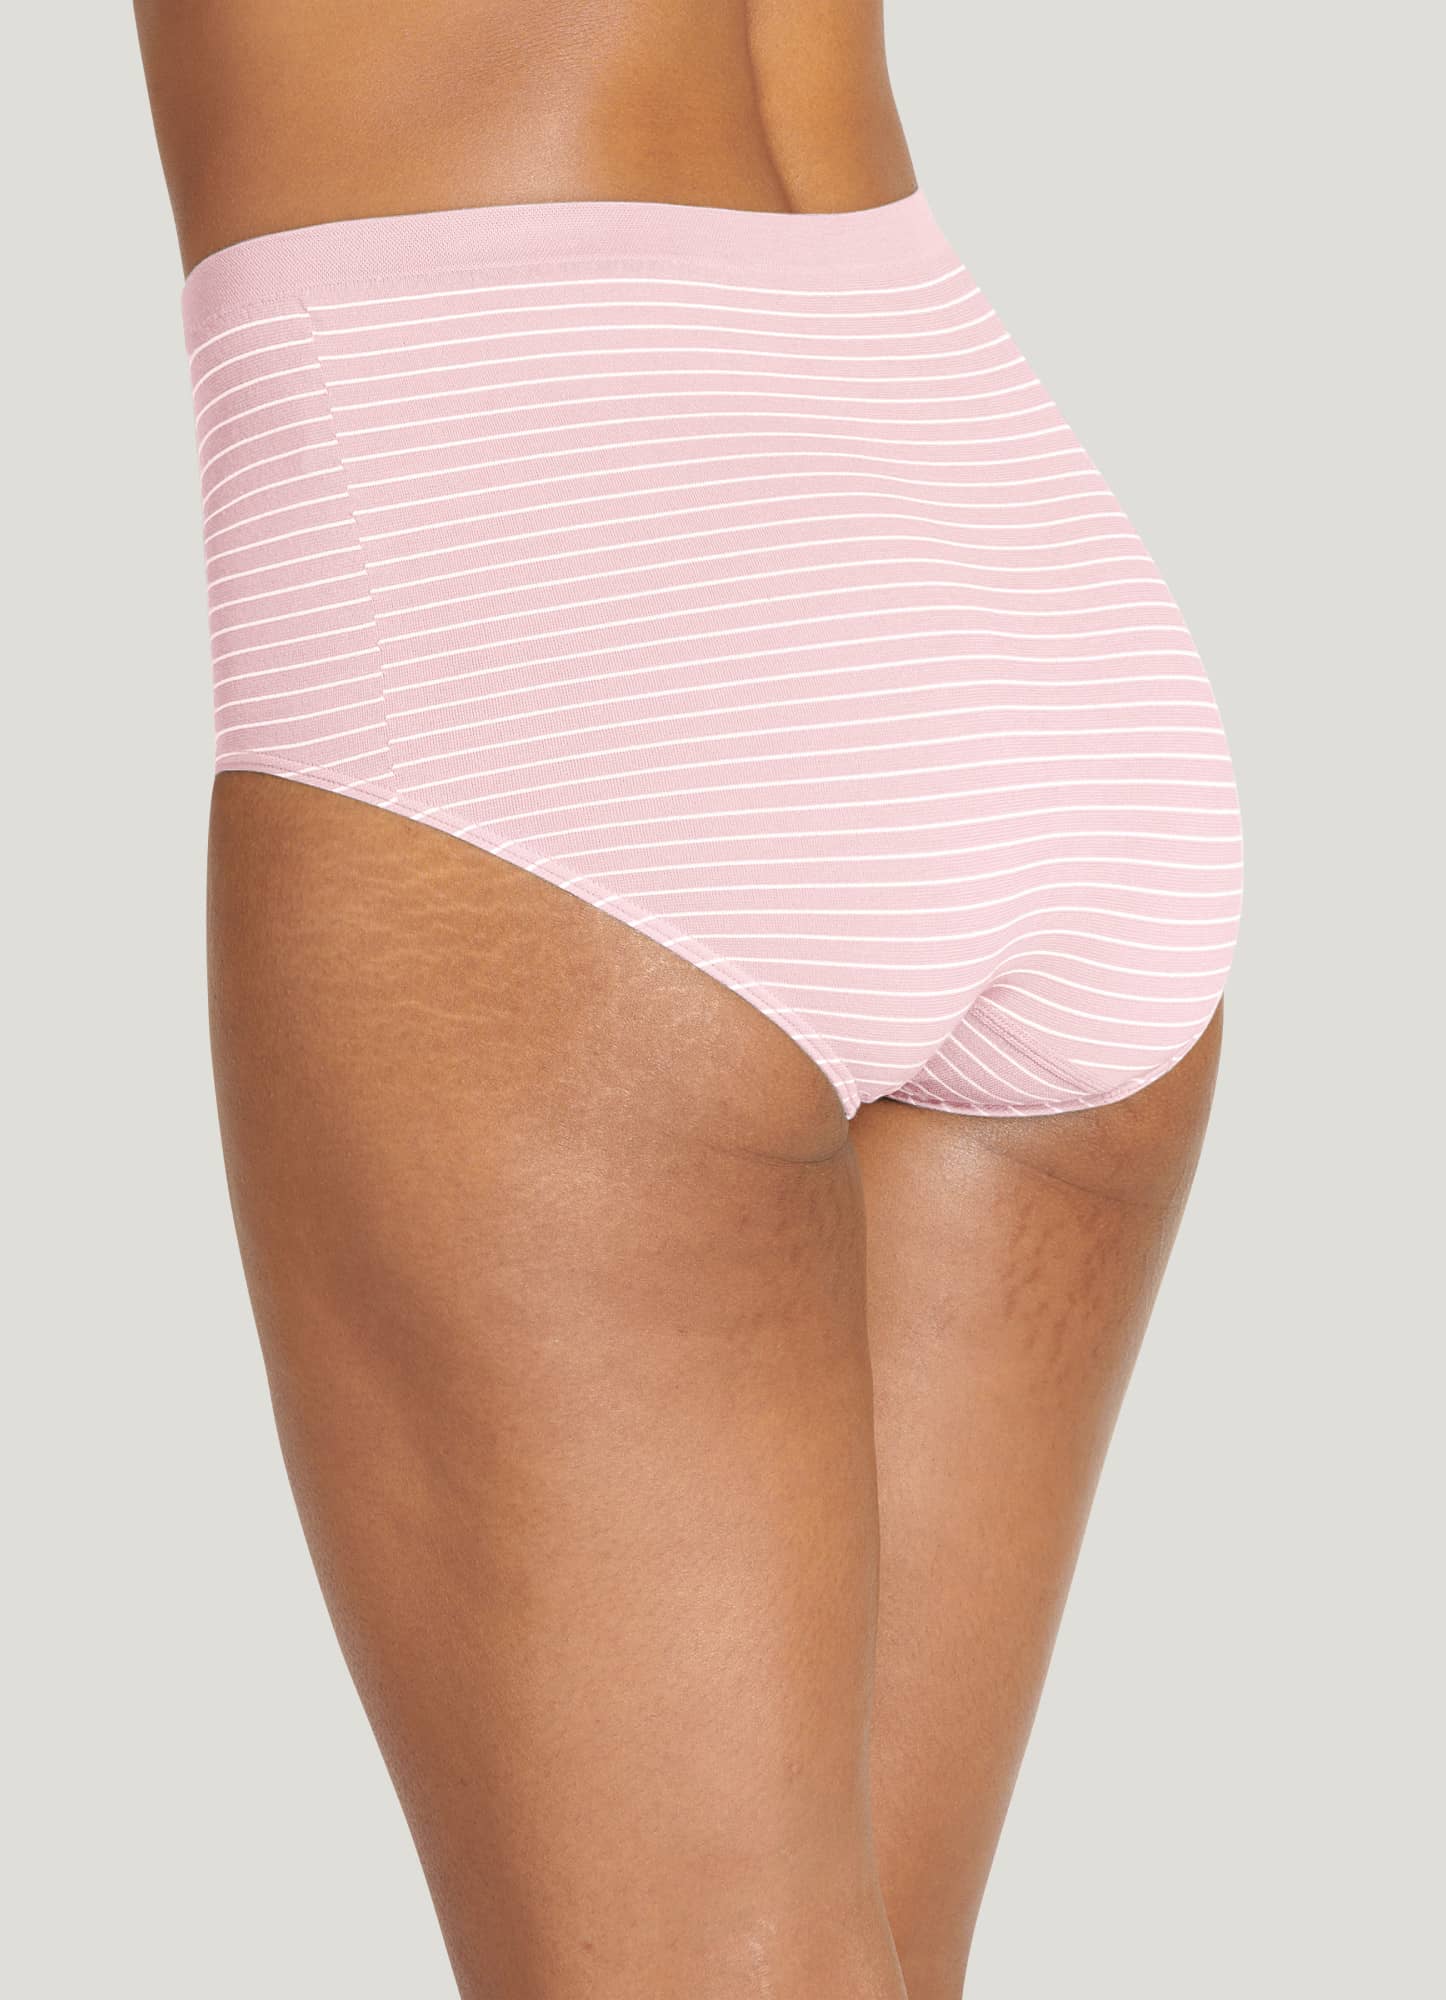 Buy Fashiol Cotton Stripe Bikini Style Panty(Quantity-2) at